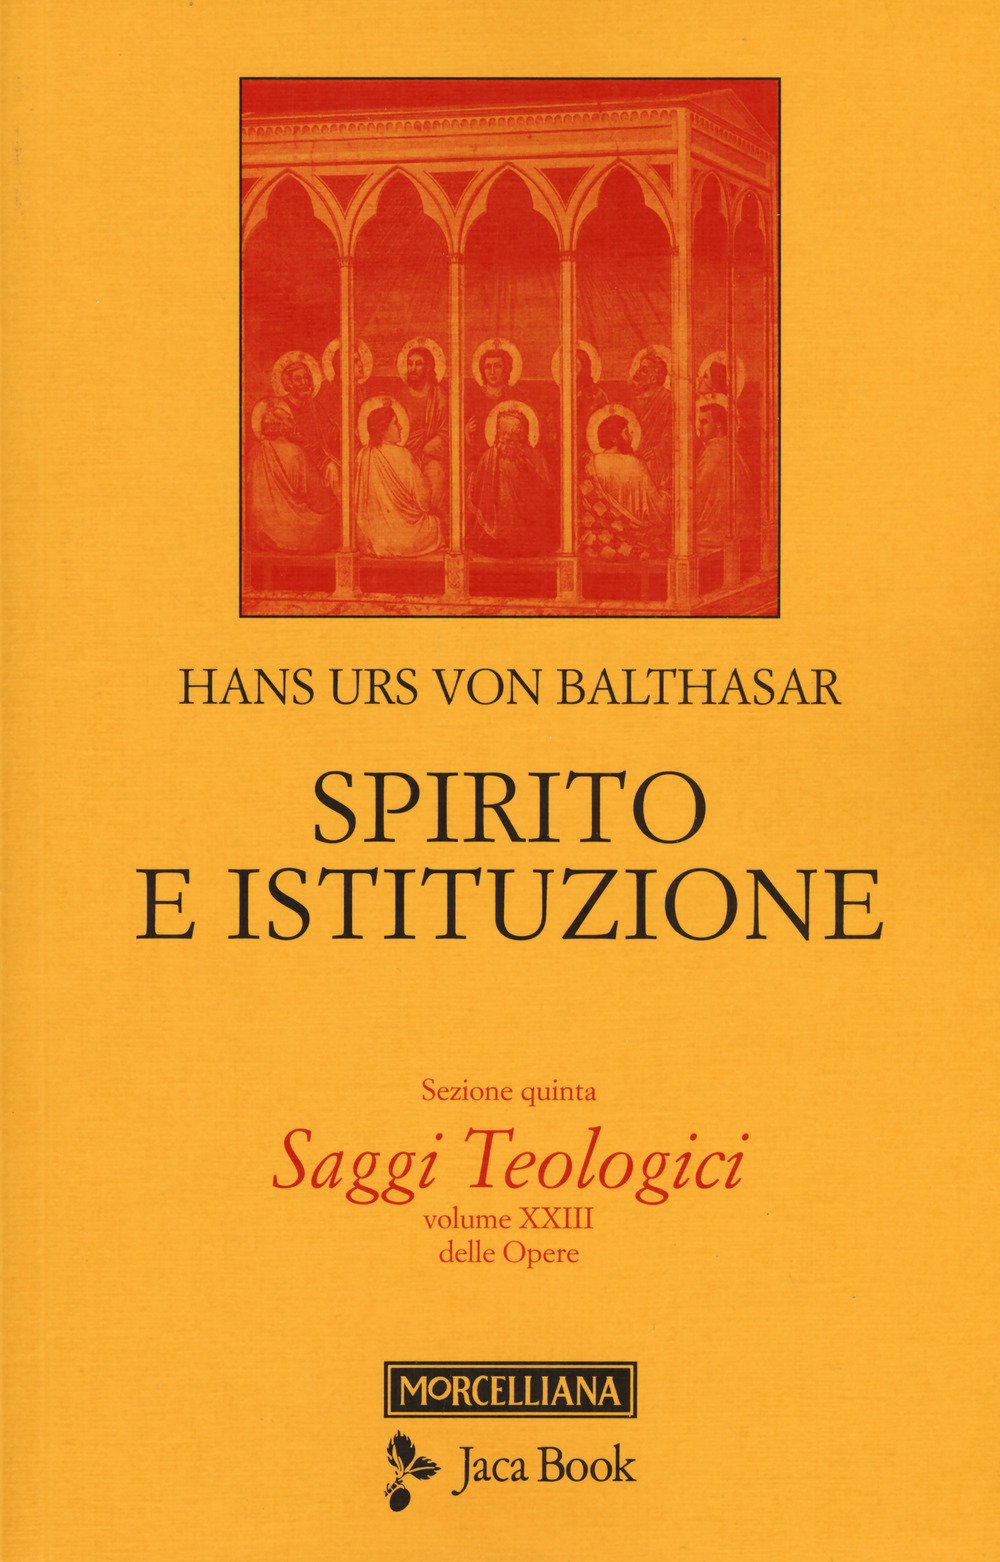 Saggi teologici. Vol. 5: Spirito e istituzione